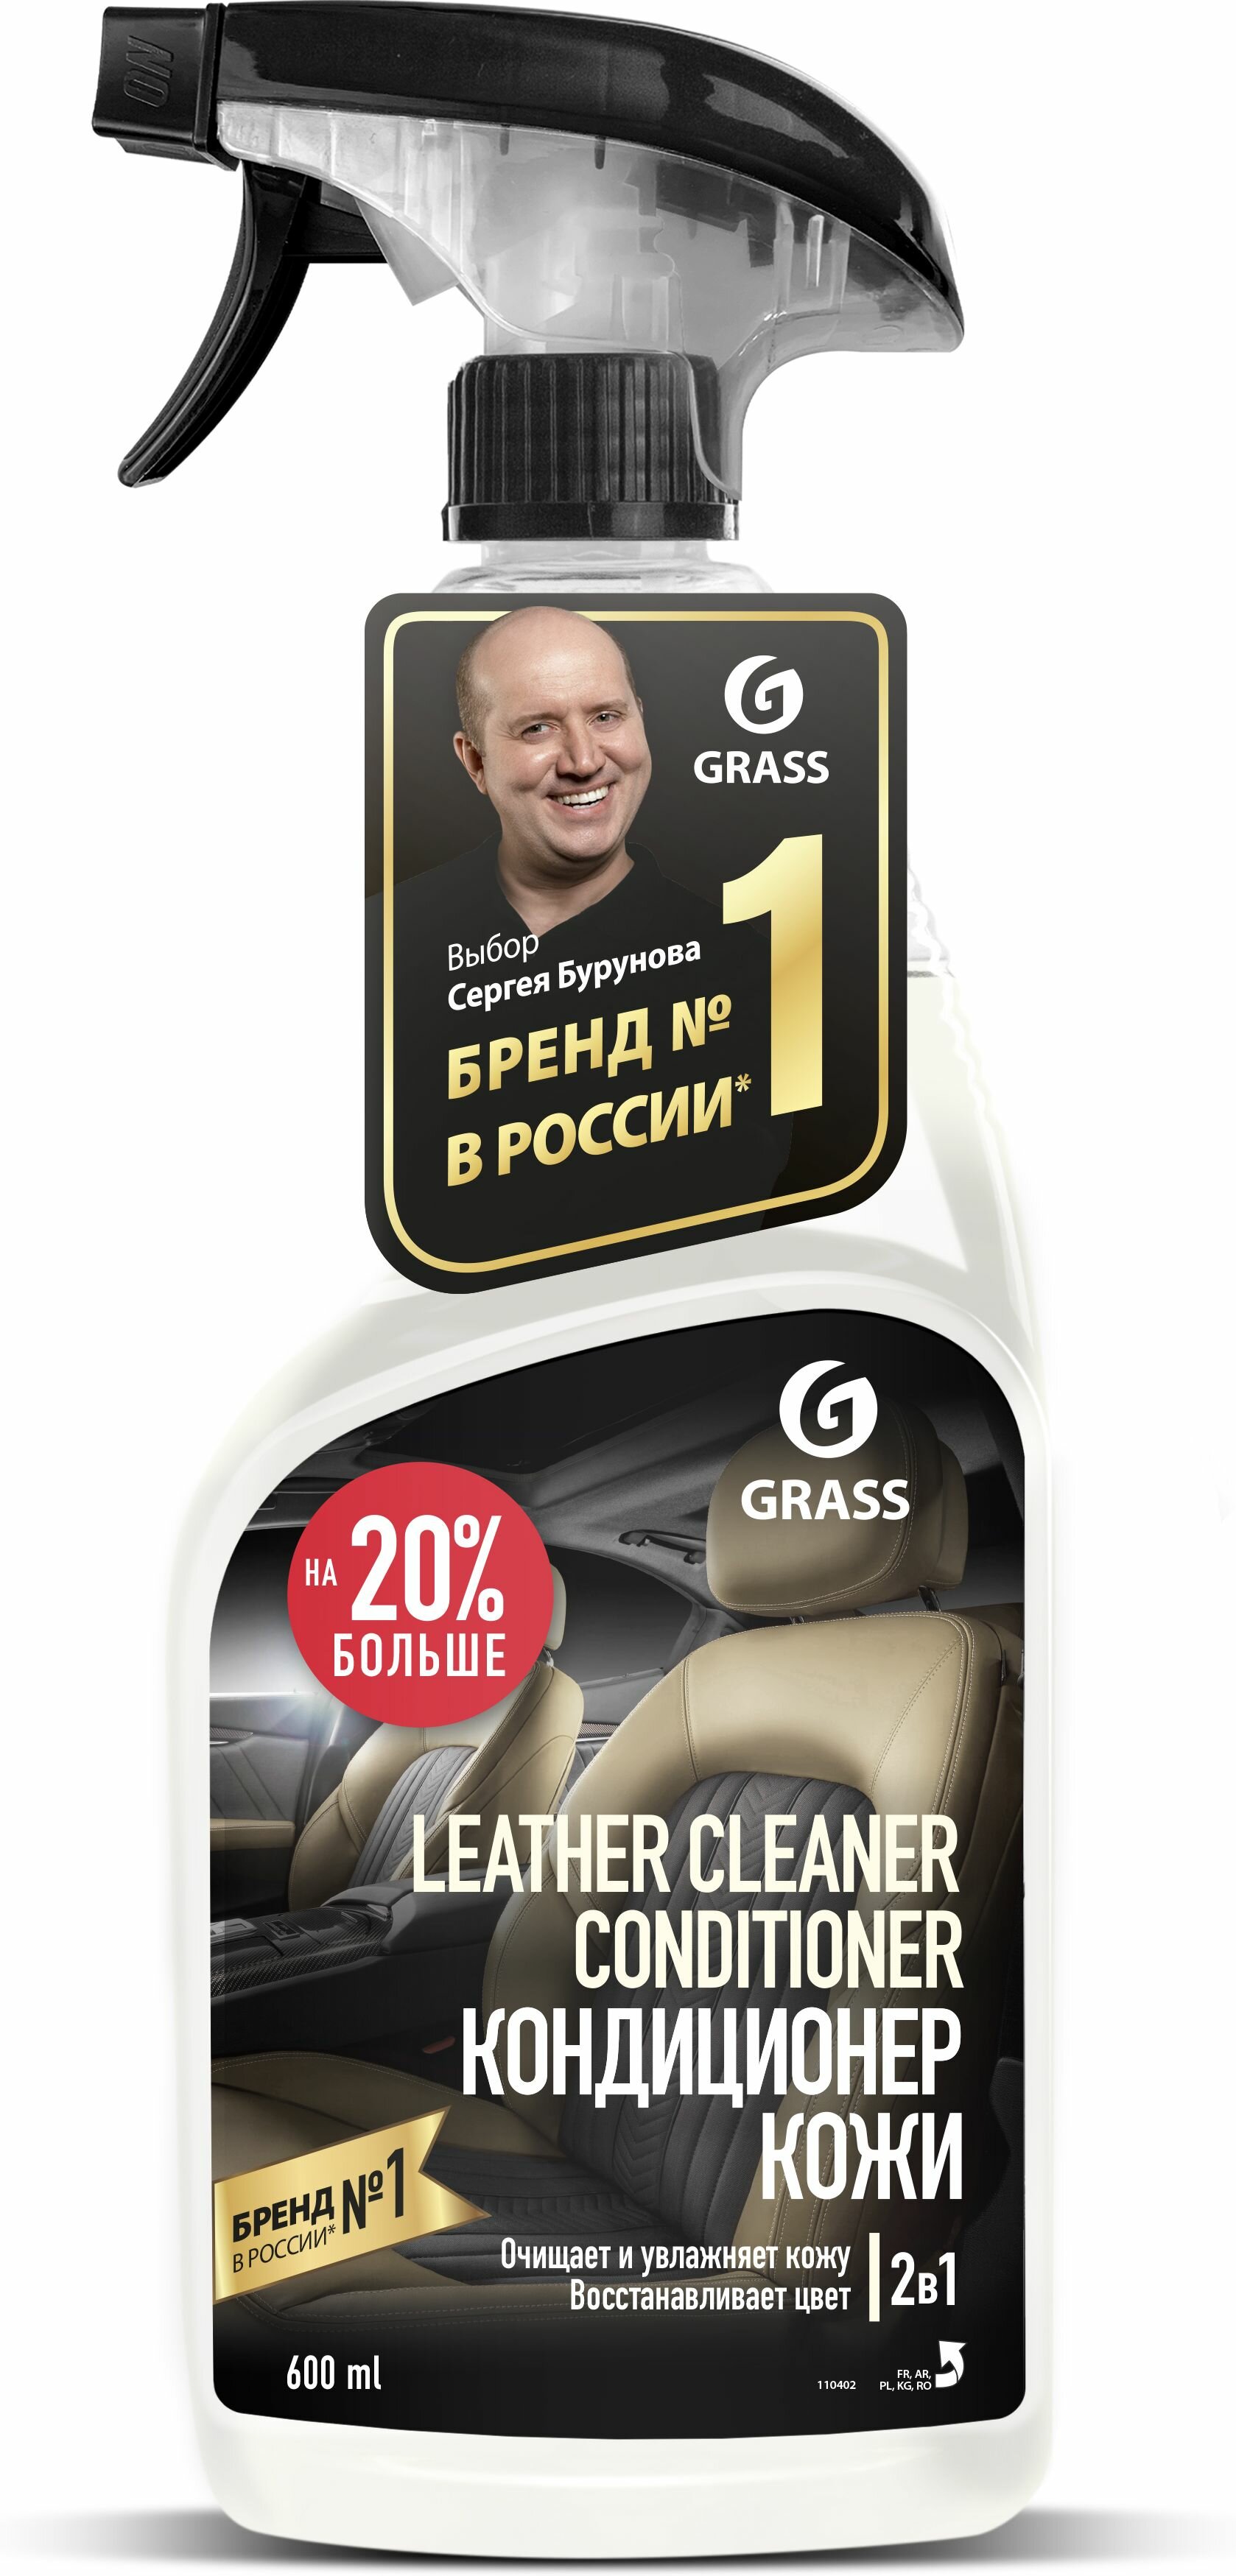 Grass Очиститель-кондиционер кожи для салона автомобиля Leather Cleaner Conditioner (110402)